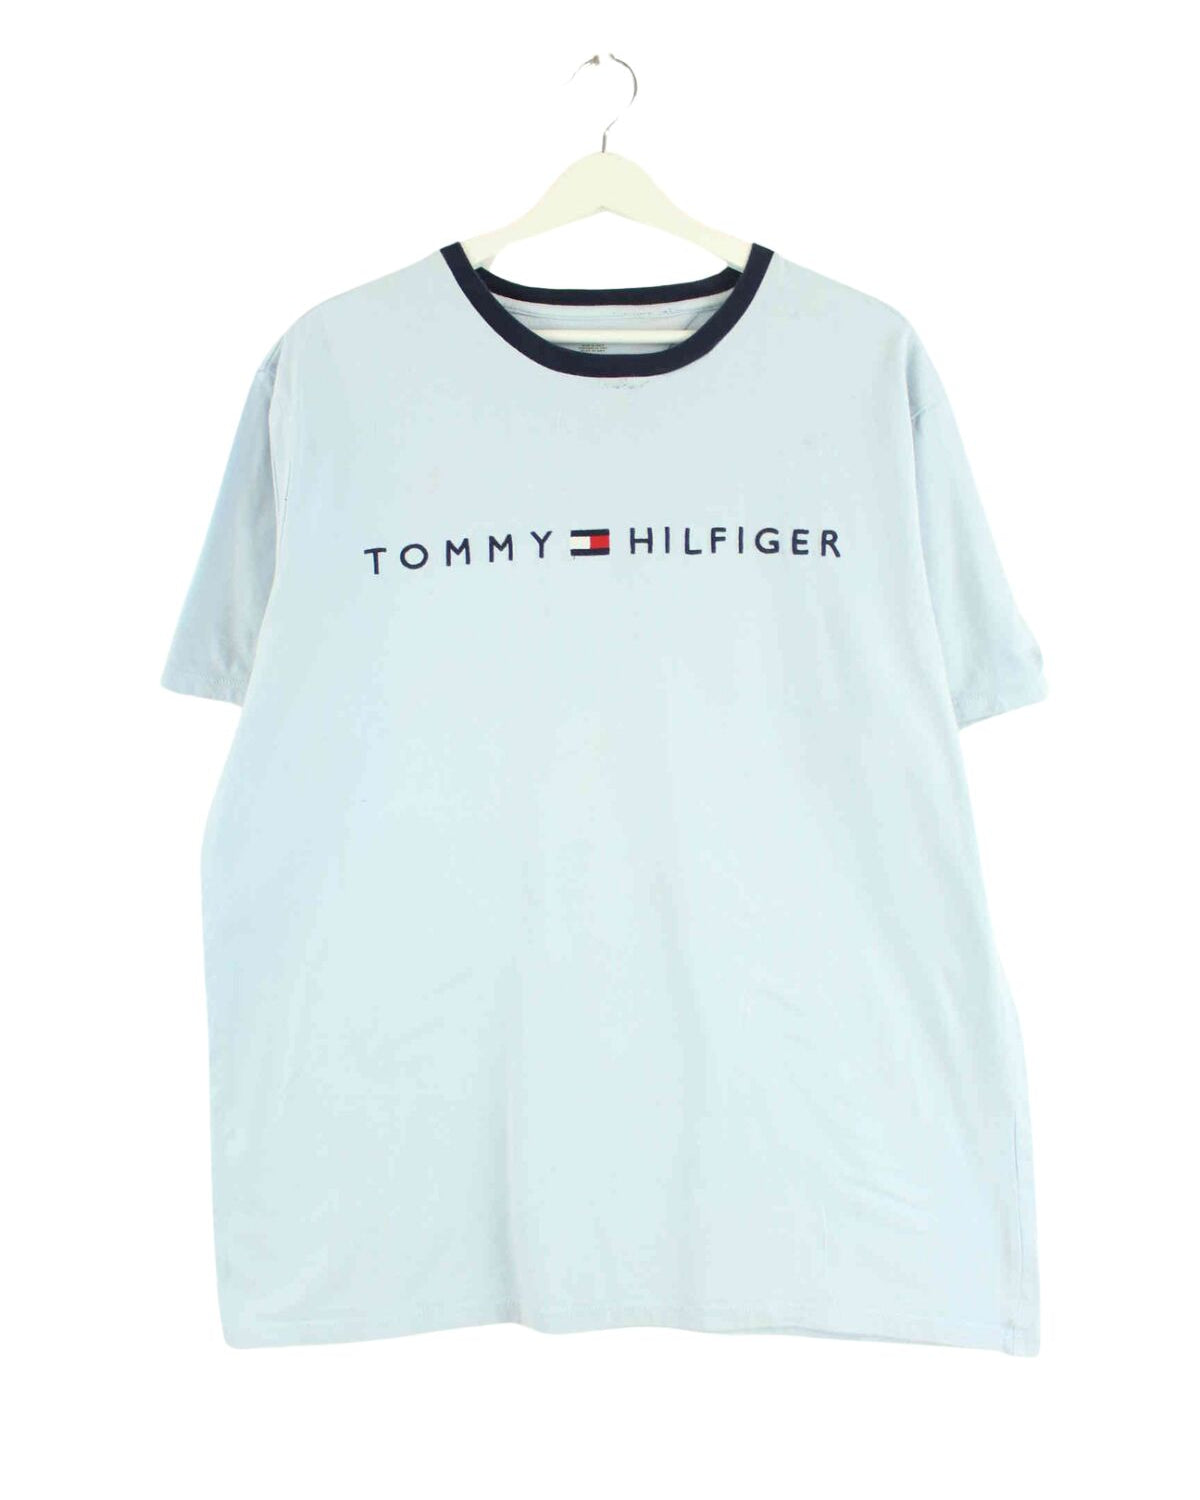 Tommy Hilfiger Embroidered Logo T-Shirt Blau L (front image)